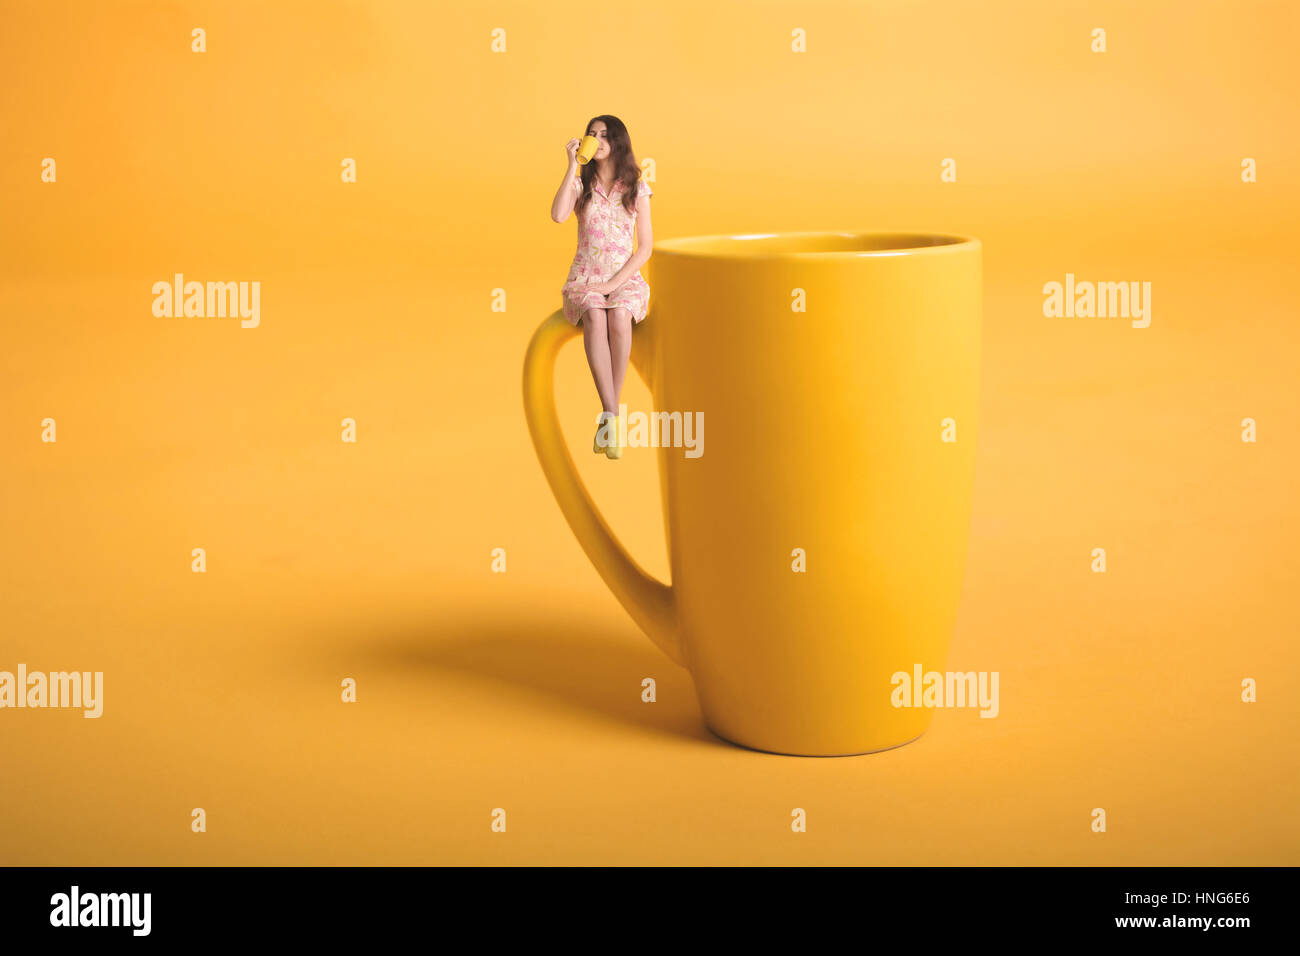 Kreative Surrealismus Design mit Miniatur-Menschen. Mädchen mit einer Tasse. Das Mädchen im rosa Kleid sitzt auf der Tasse. Gelbe Tasse Tee oder Kaffee. Junge Frau Stockfoto